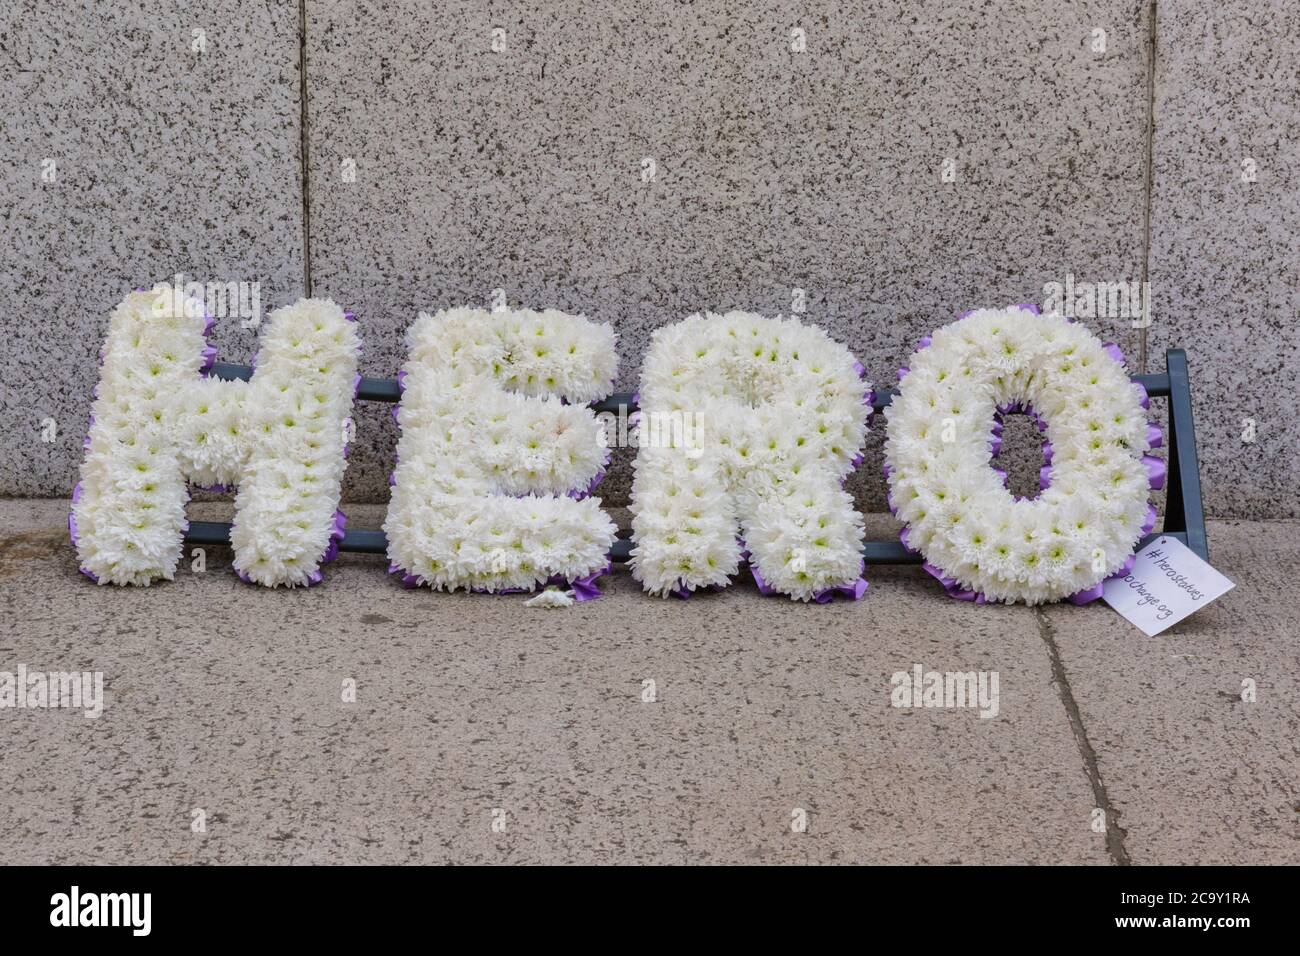 Exposition de fleurs de héros par la campagne « Save Our statues » sur une statue à Londres, en Angleterre Banque D'Images